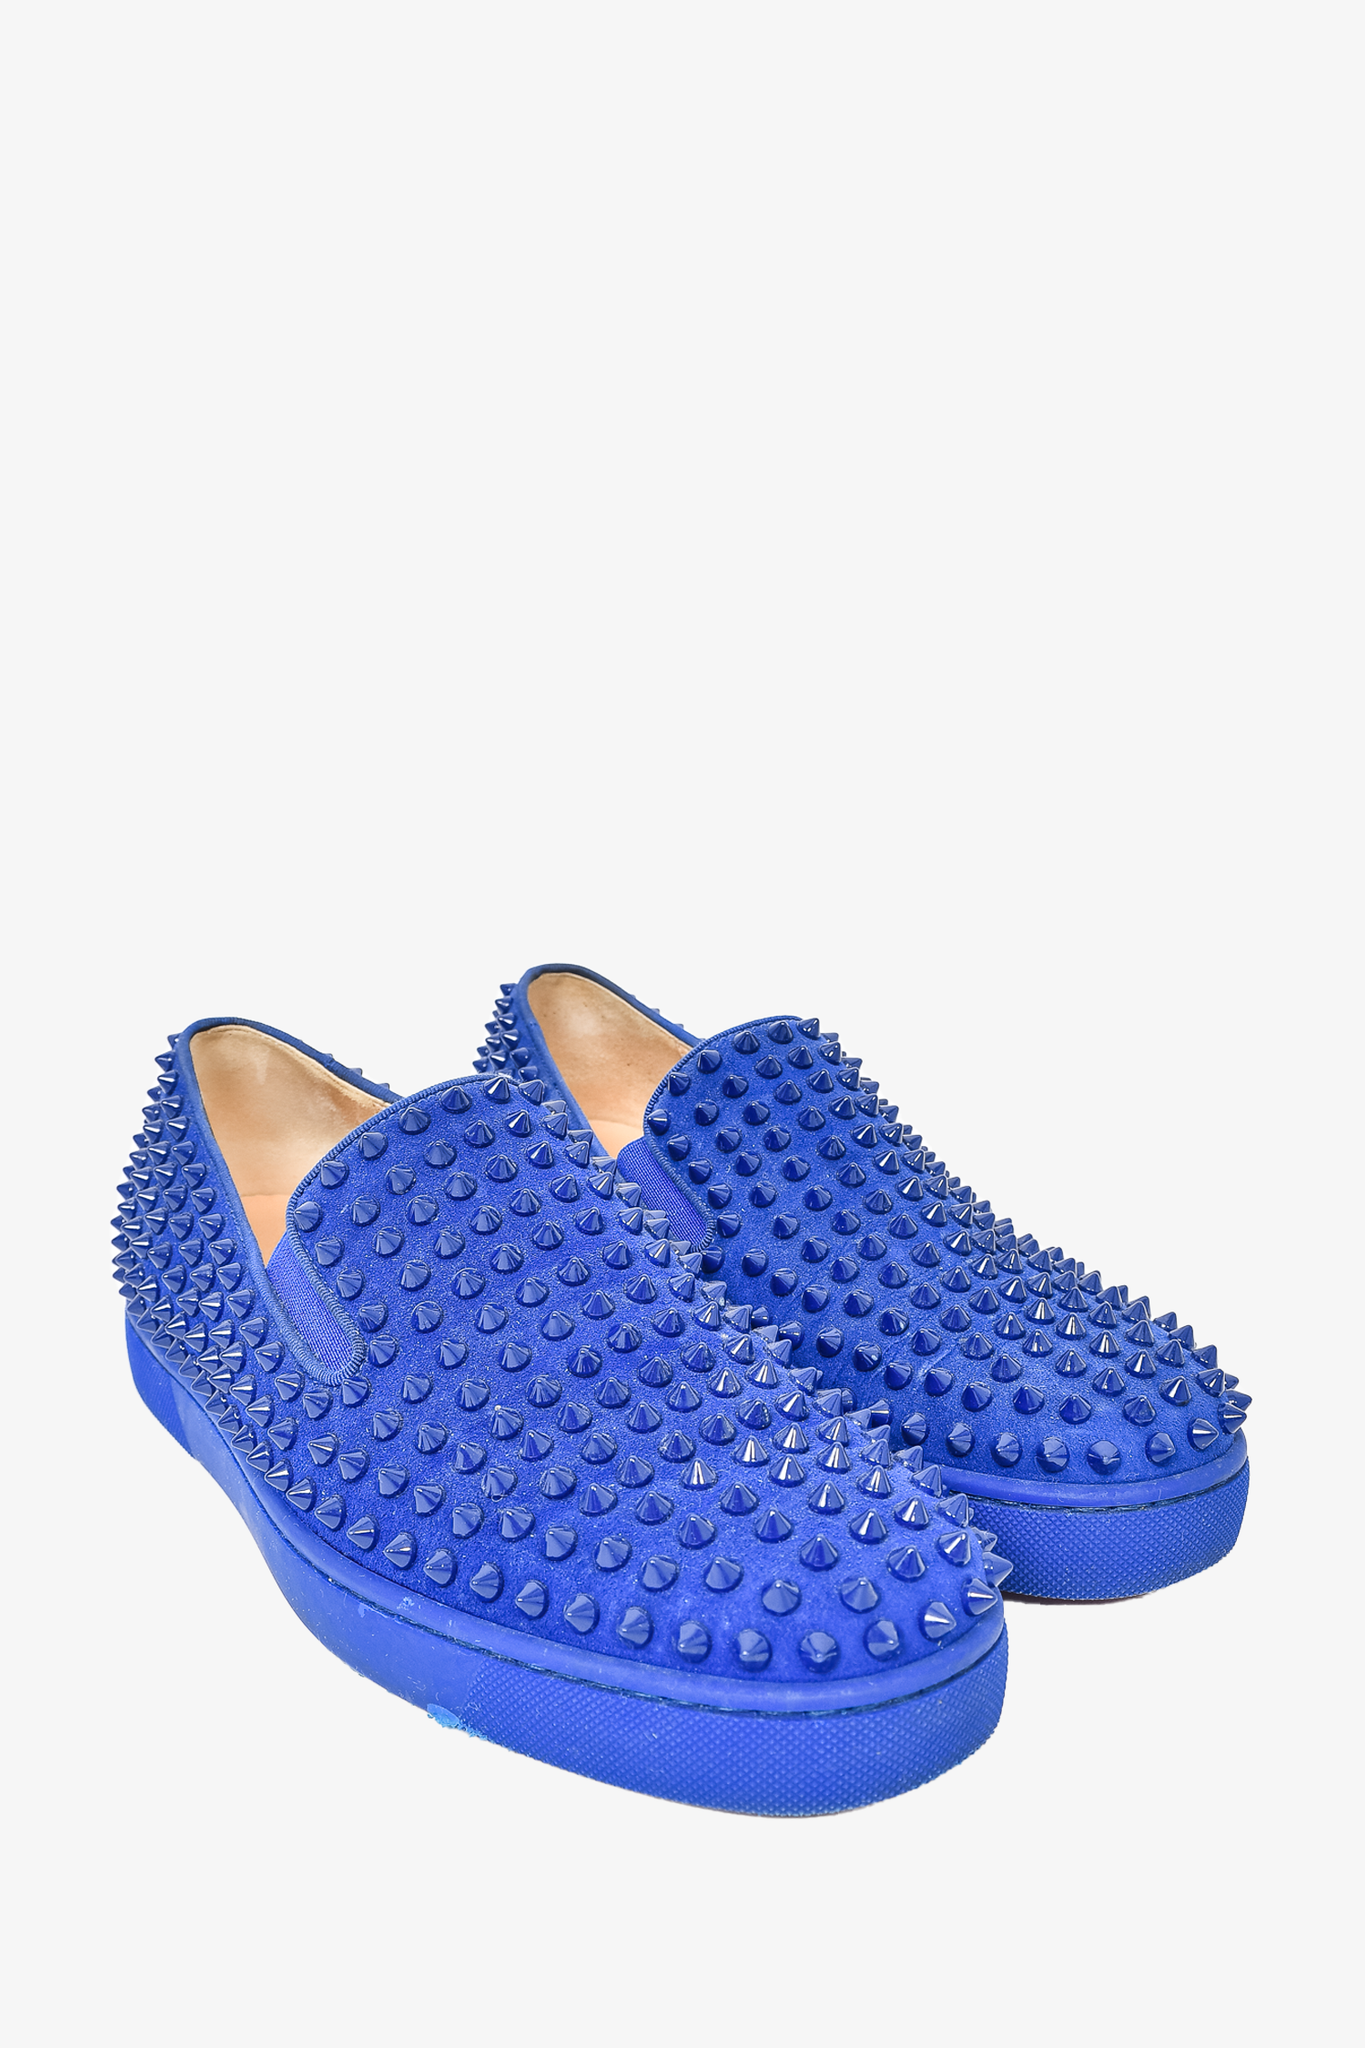 Christian Louboutin Sneaker Blue, Slip-On Sneaker